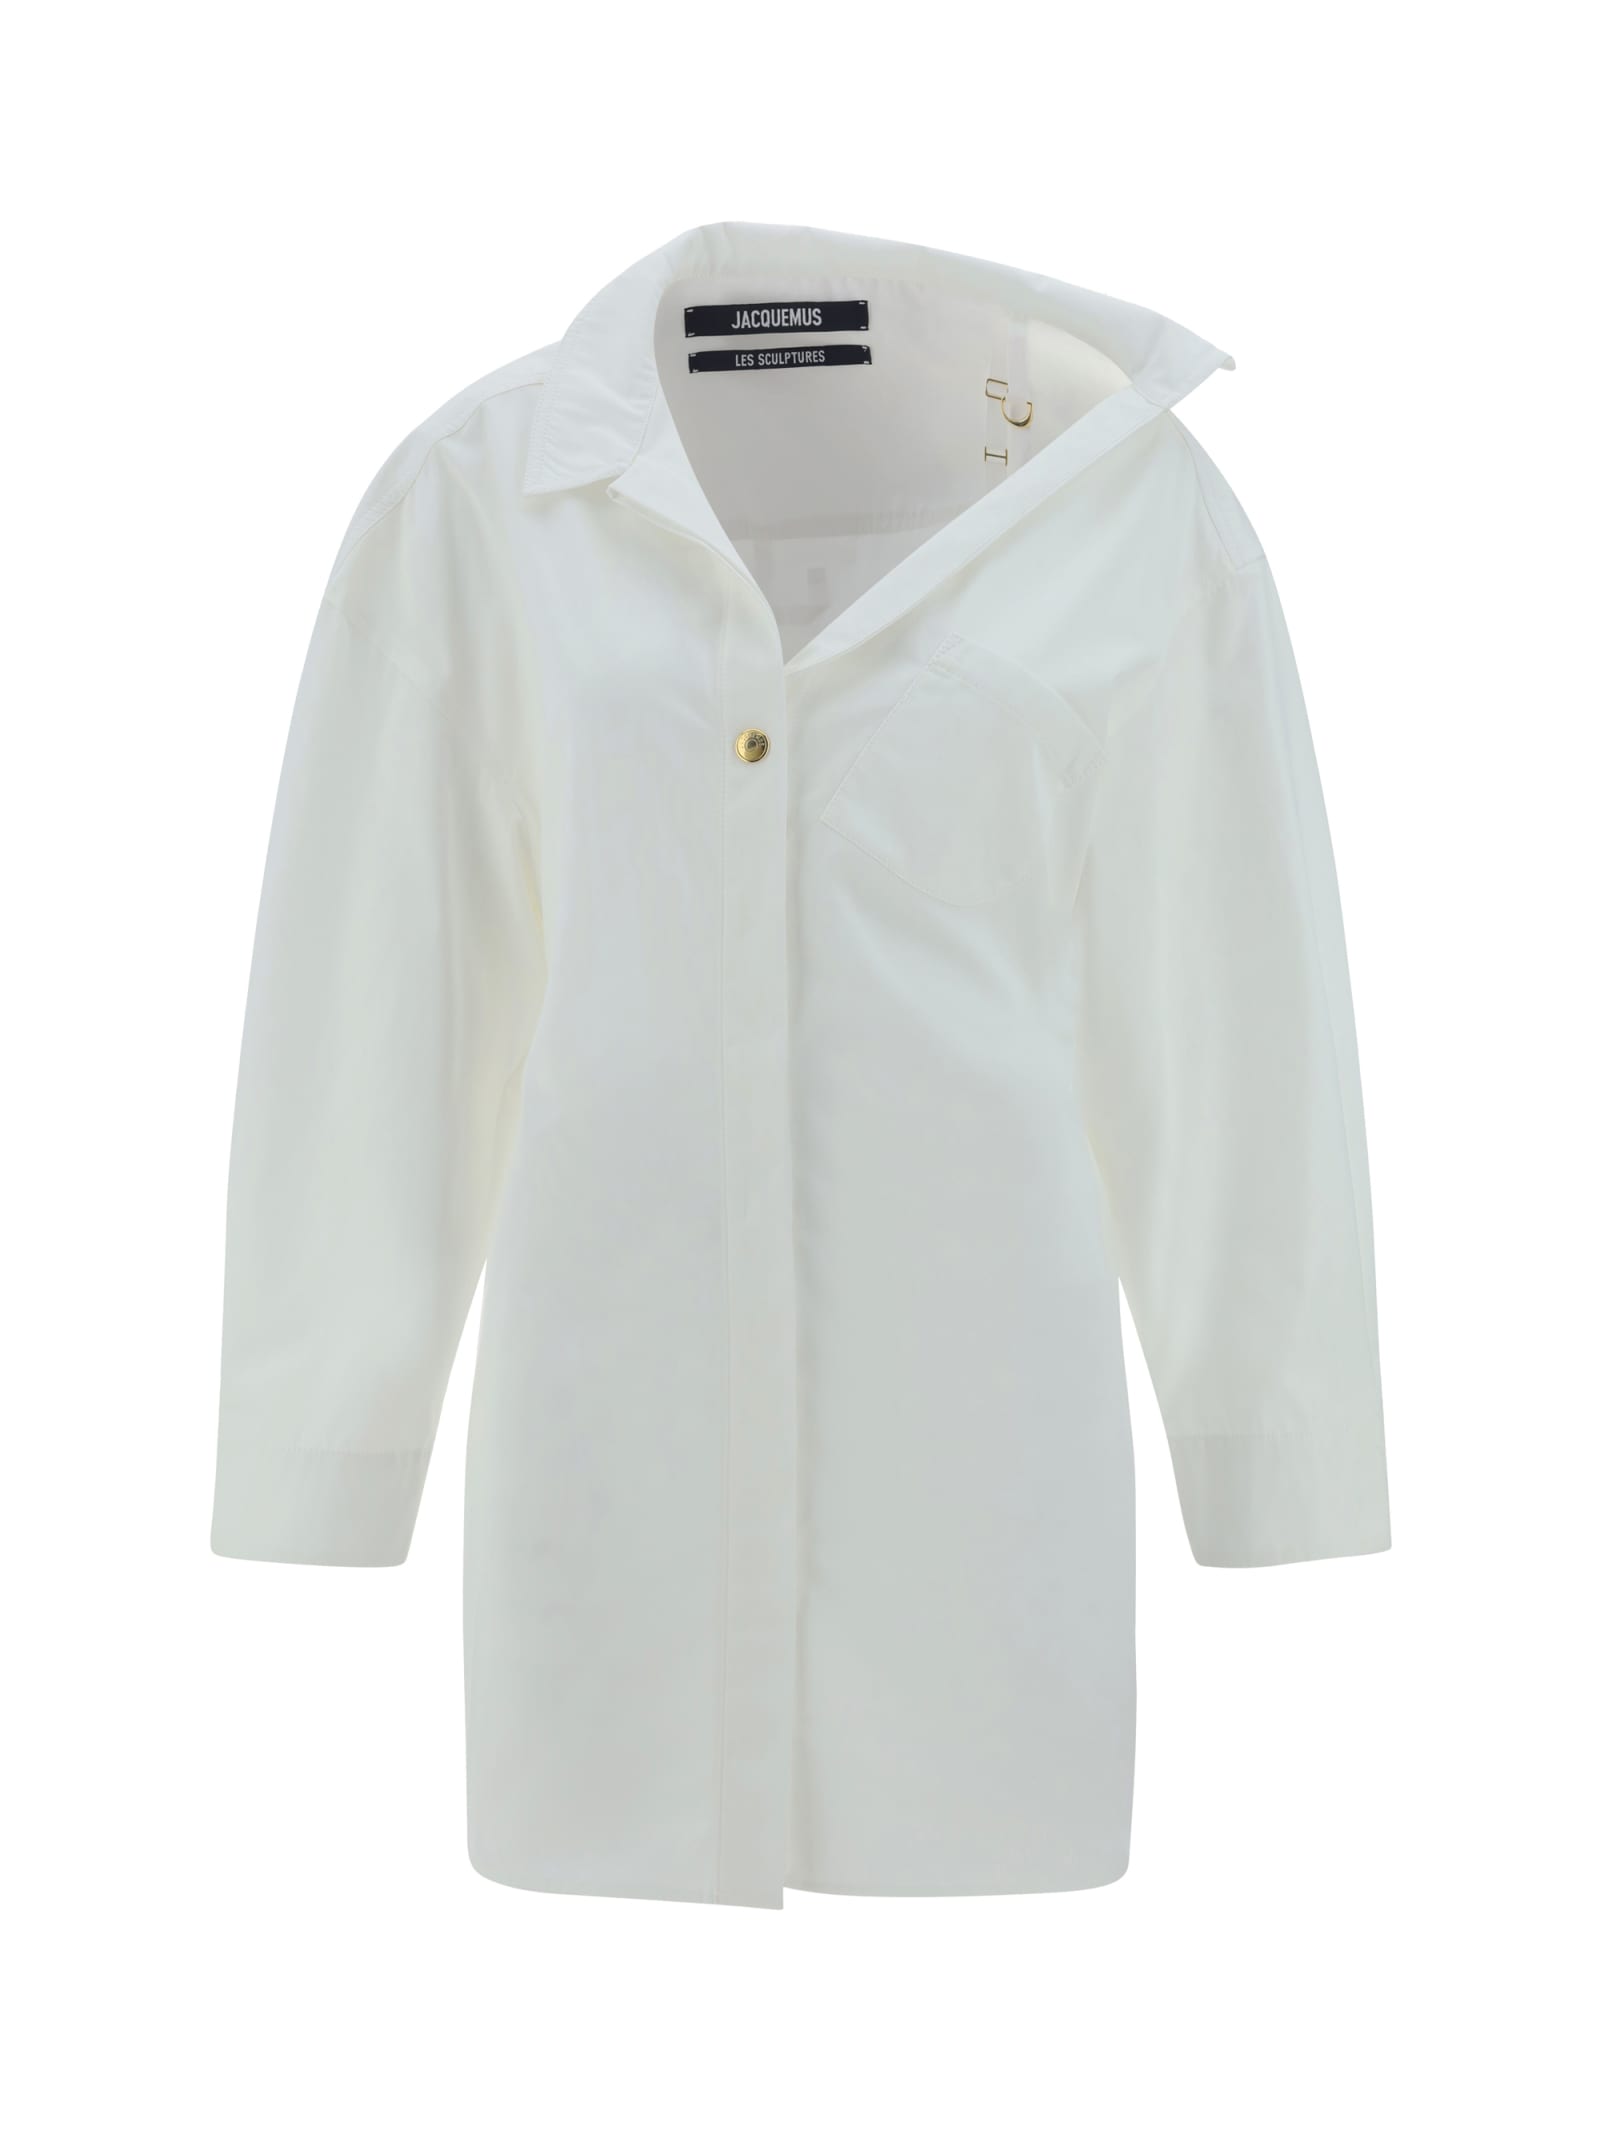 Jacquemus La Mini Robe Chemisier Dress - White - female - Size: 38